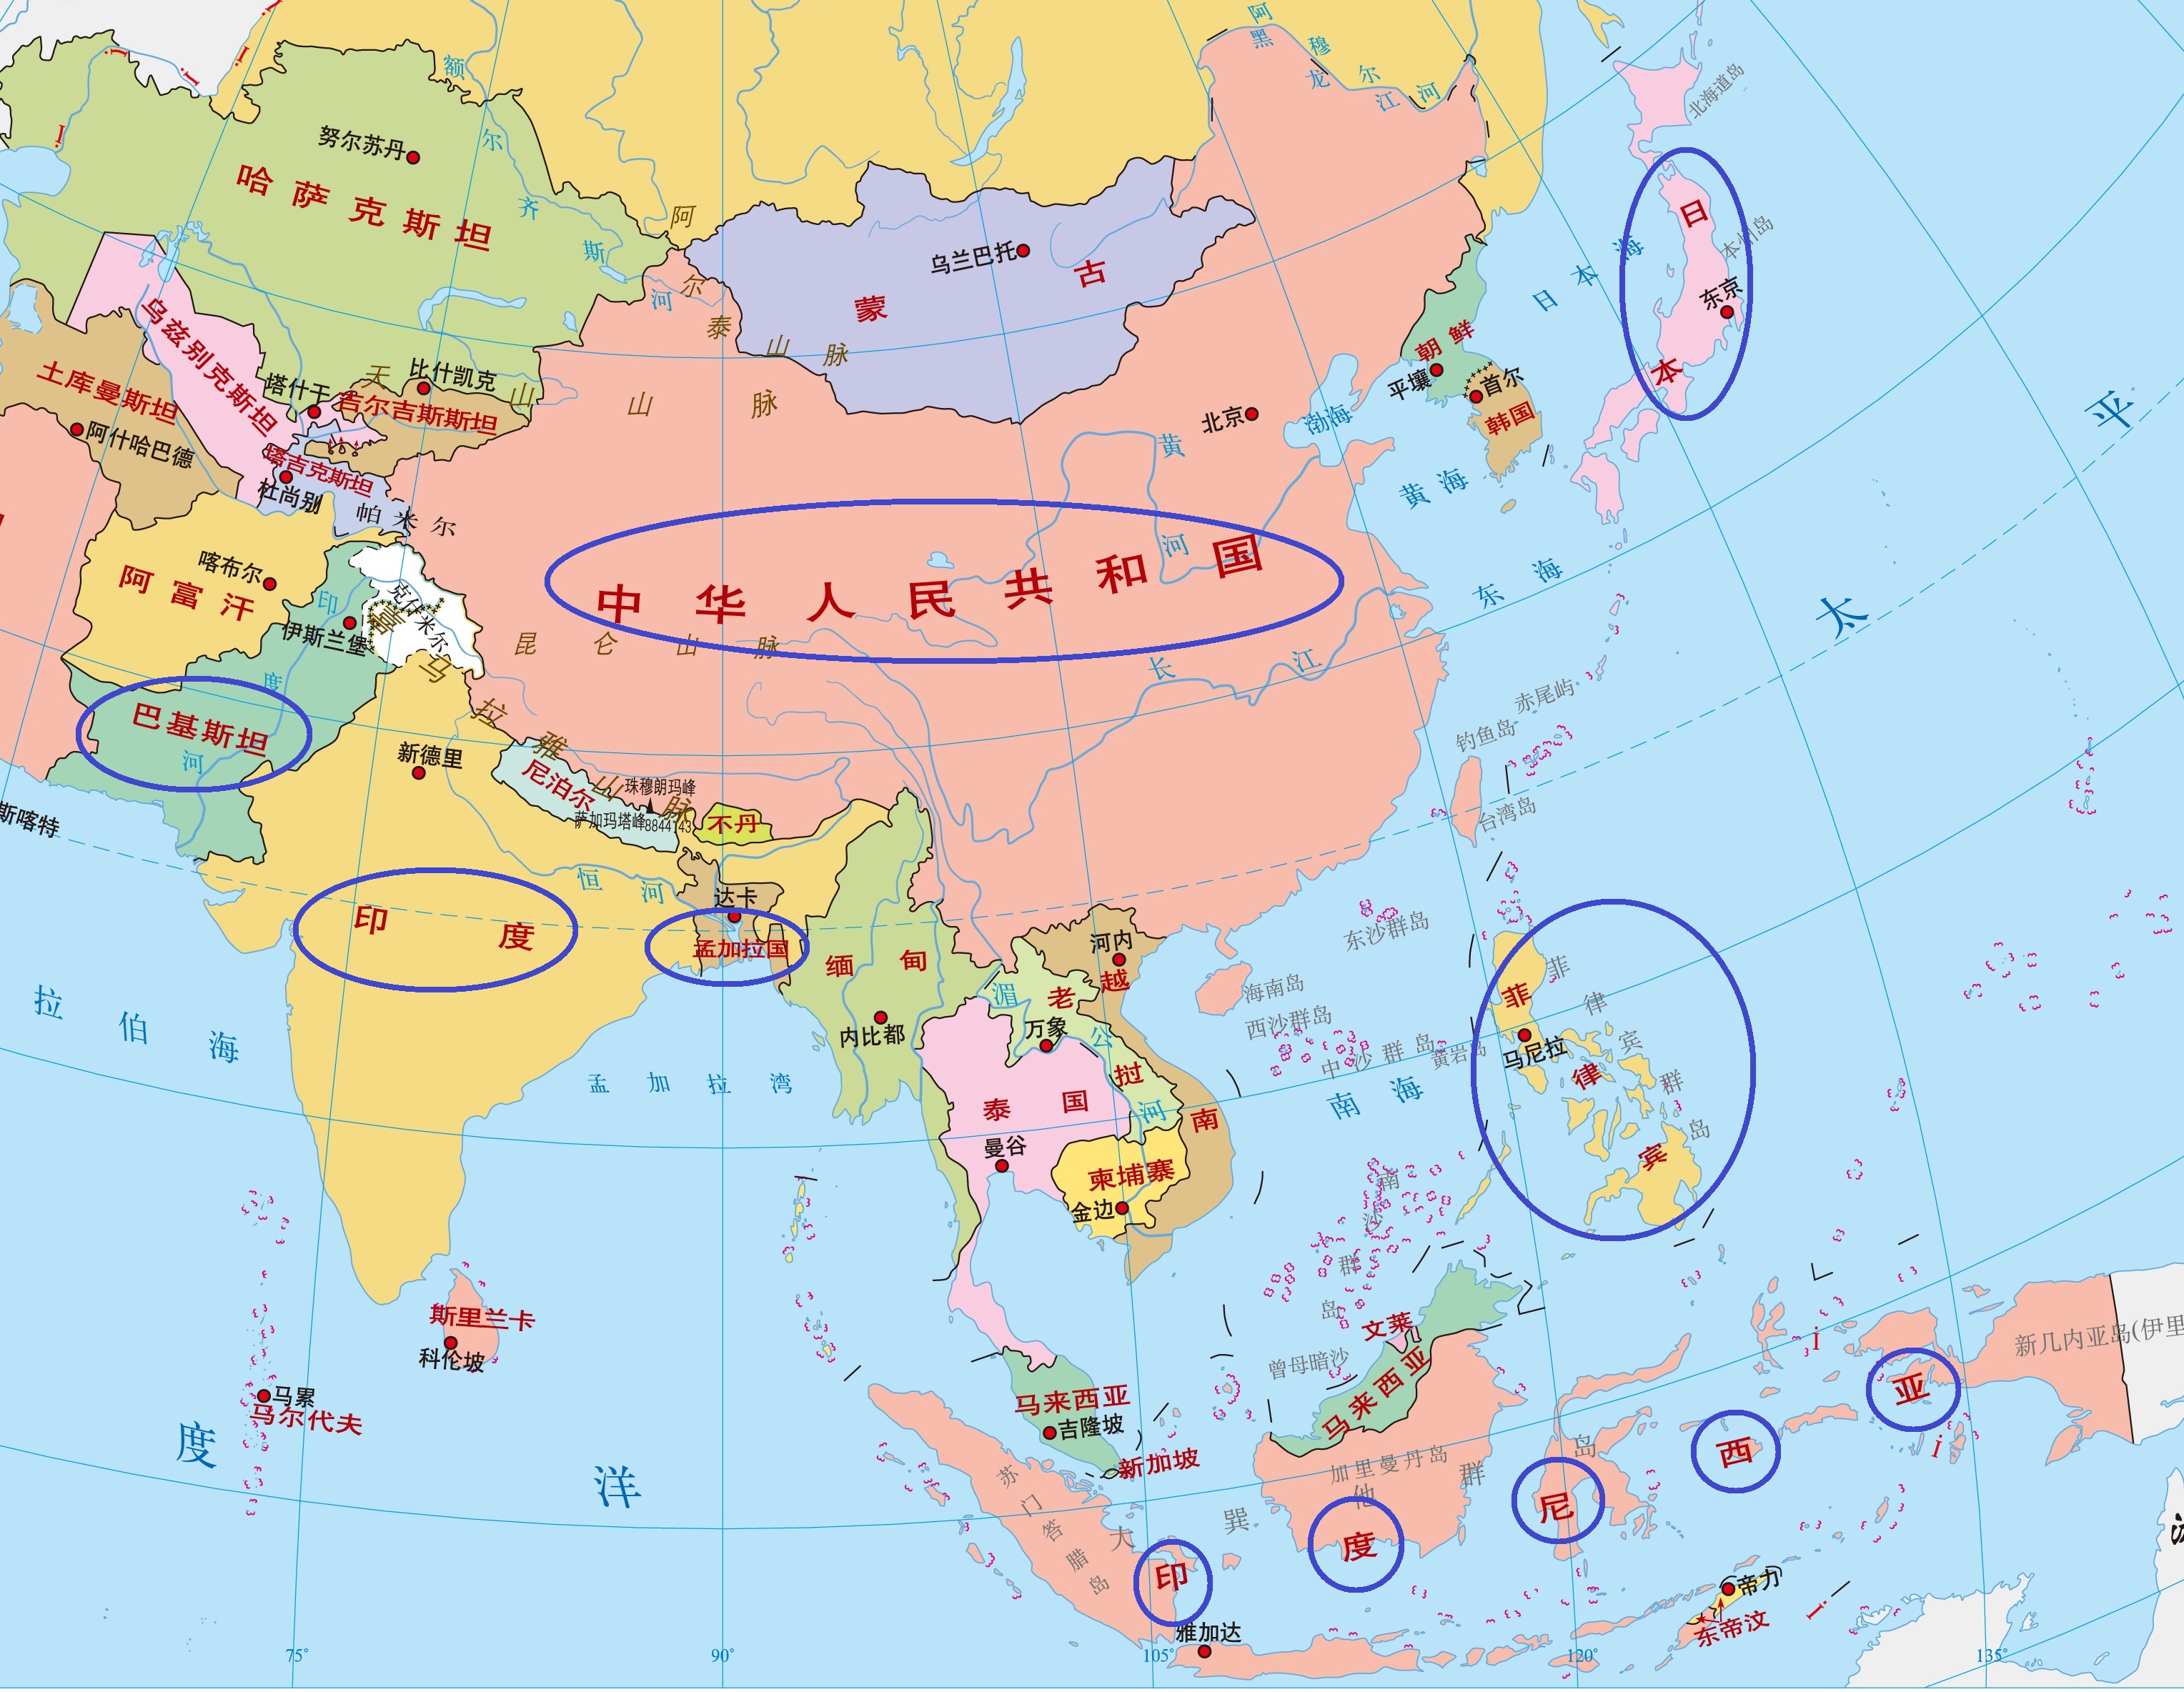 亚洲分布图南亚东亚图片